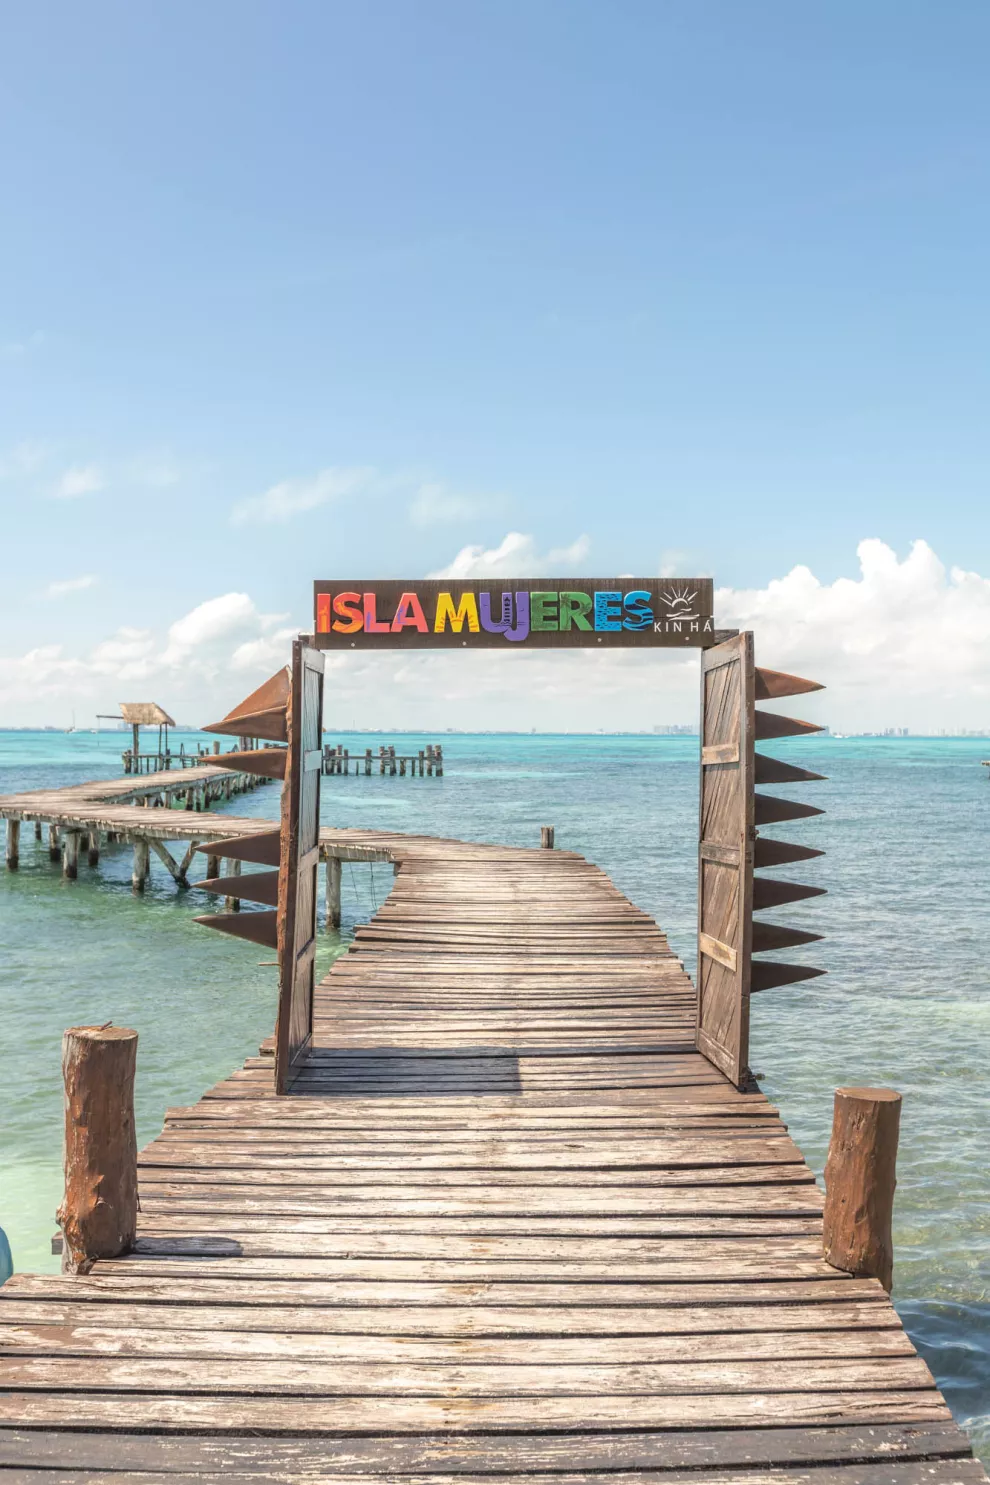 Si vas en plan de amigas y quieren divertirse, esta isla es un hotspot: llegás en 20 minutos en ferry desde Cancún